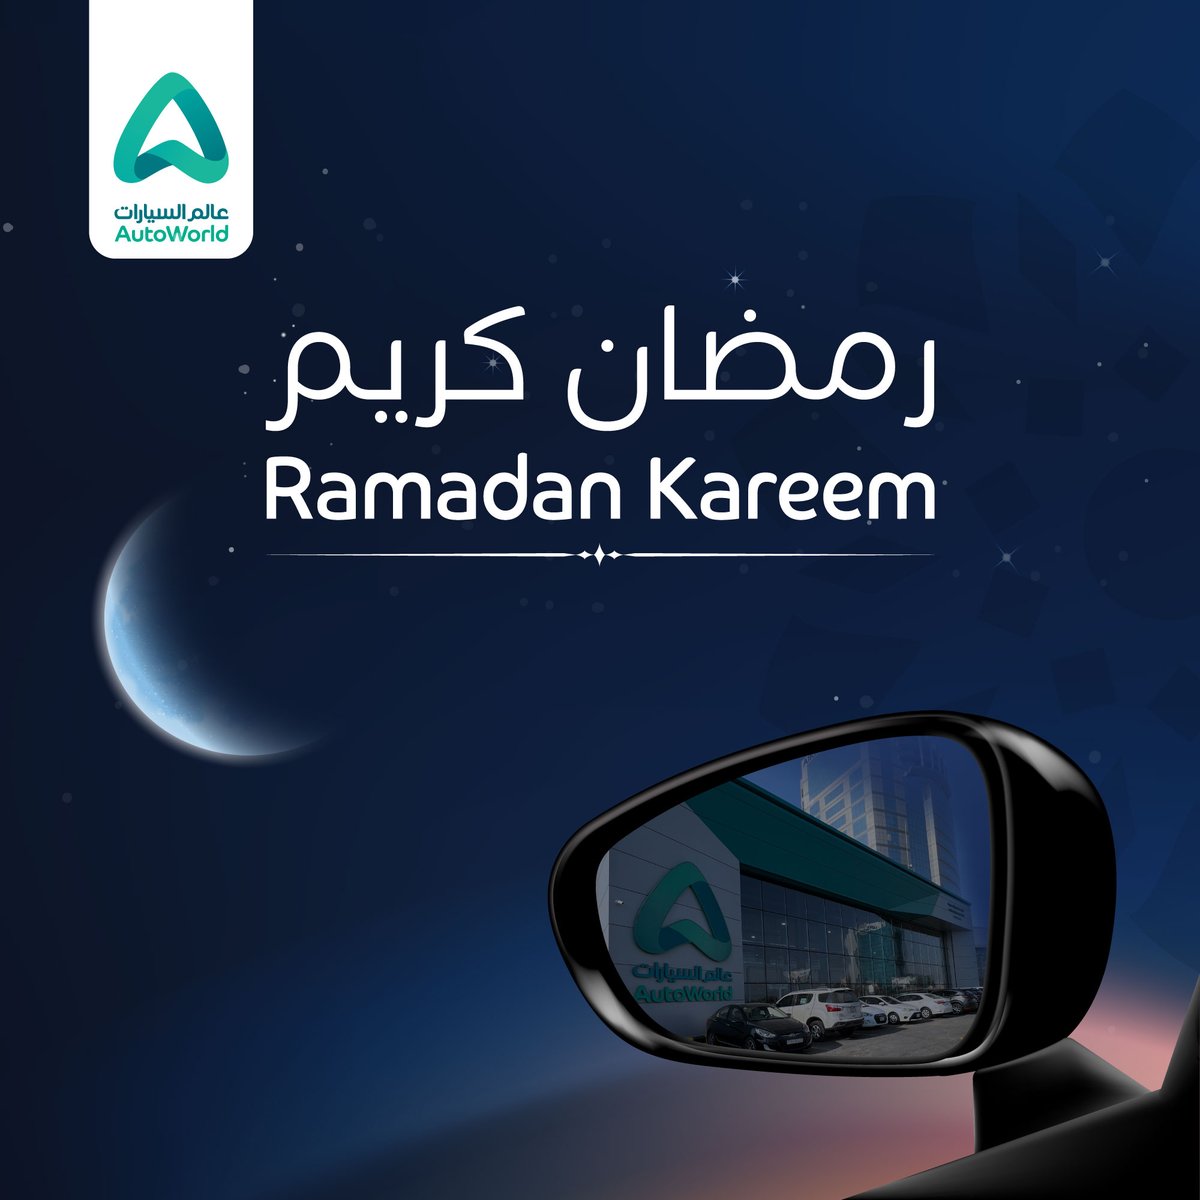 مبارك عليكم الشهر من عالم السيارات

#عالم_السيارات⁩
⁧#التأجير_التشغيلي⁩
#رمضان

#AutoWorld⁩
⁦#Operationallease
#Leasing
#VehicleLeasing
#Ramadan